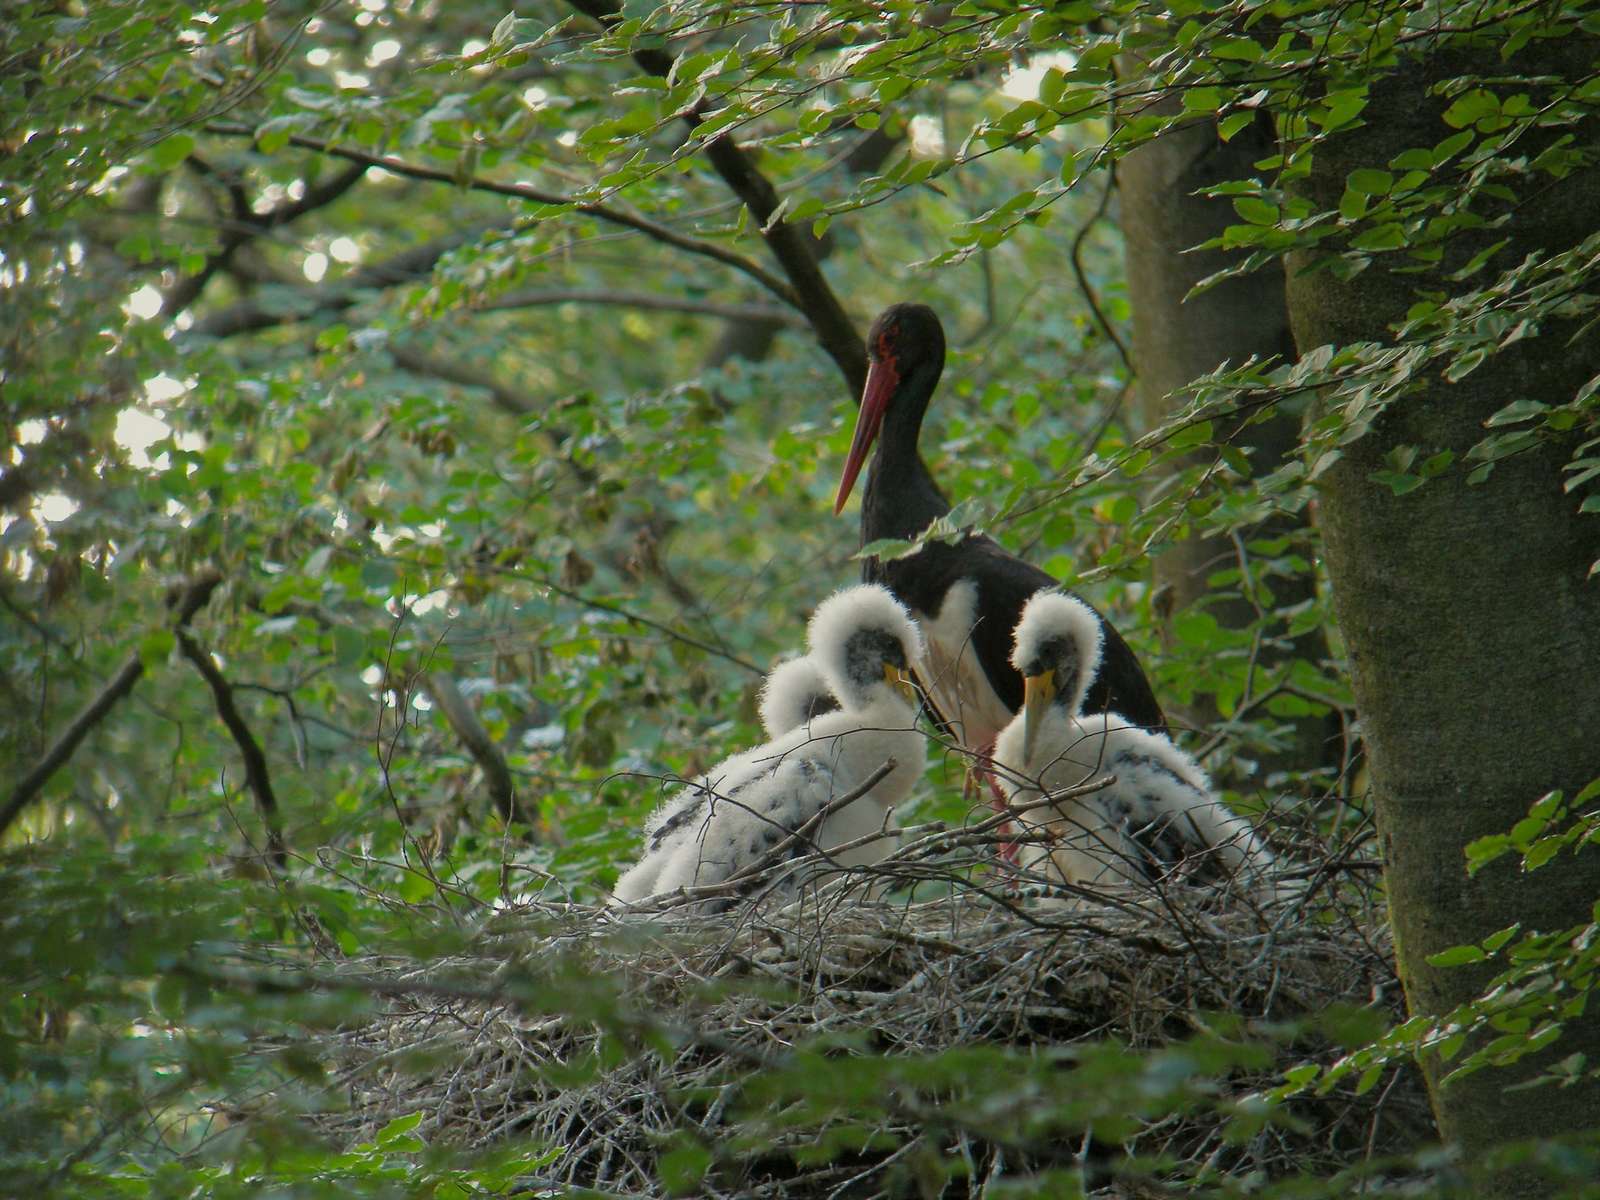 Cigogne noire (Ciconia nigra) adulte dans son nid, avec les jeunes